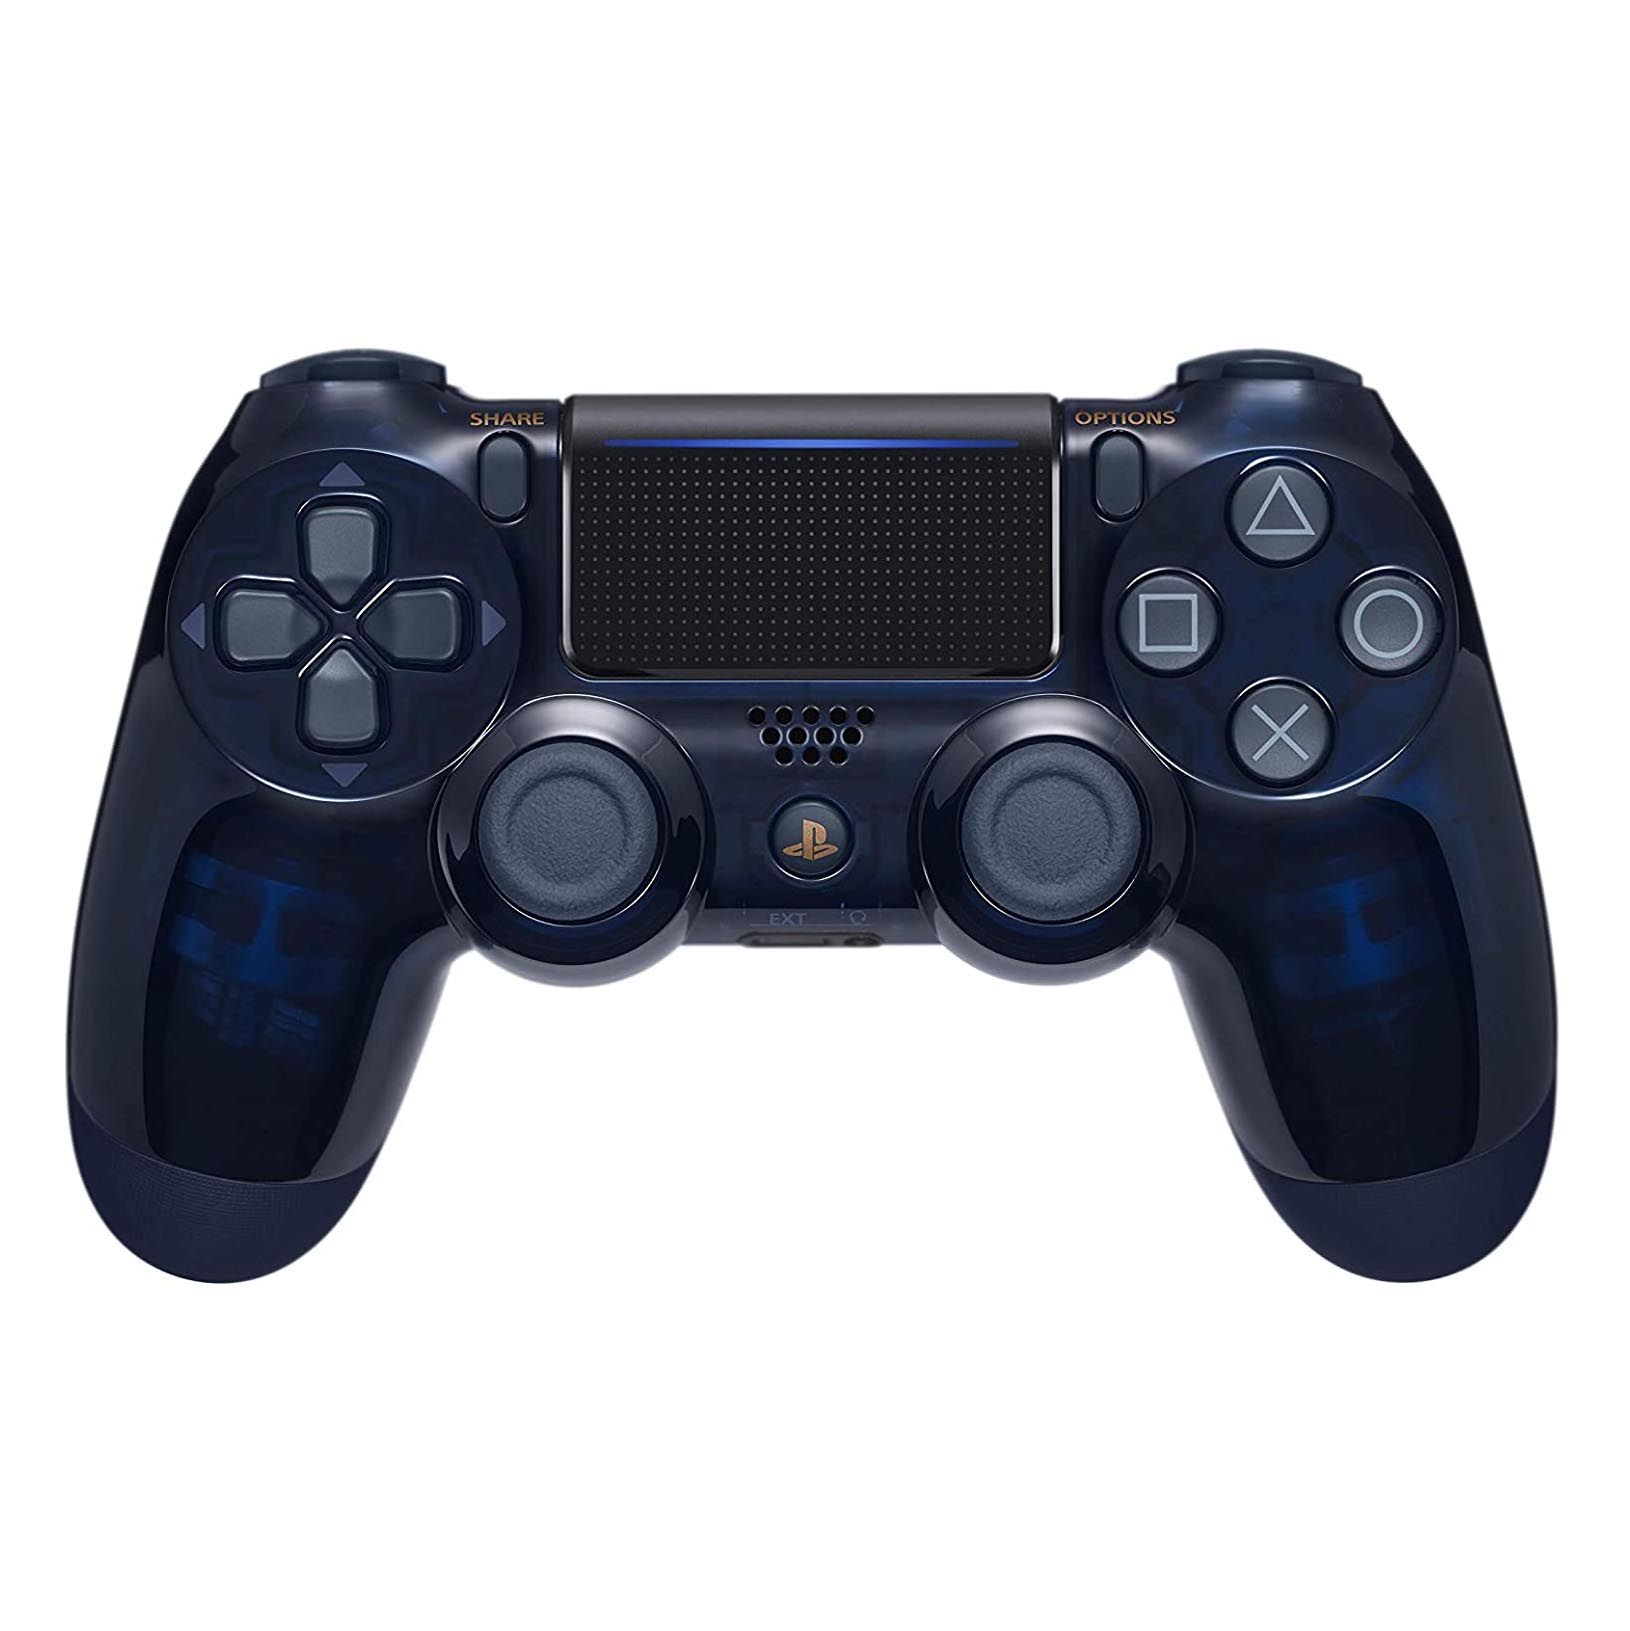 Беспроводной геймпад Sony DualShock 4 500 Million Limited Edition для PlayStation 4, темно-синий геймпад джойстик 8 bit форма sega узкий разъем 9 pin чёрный